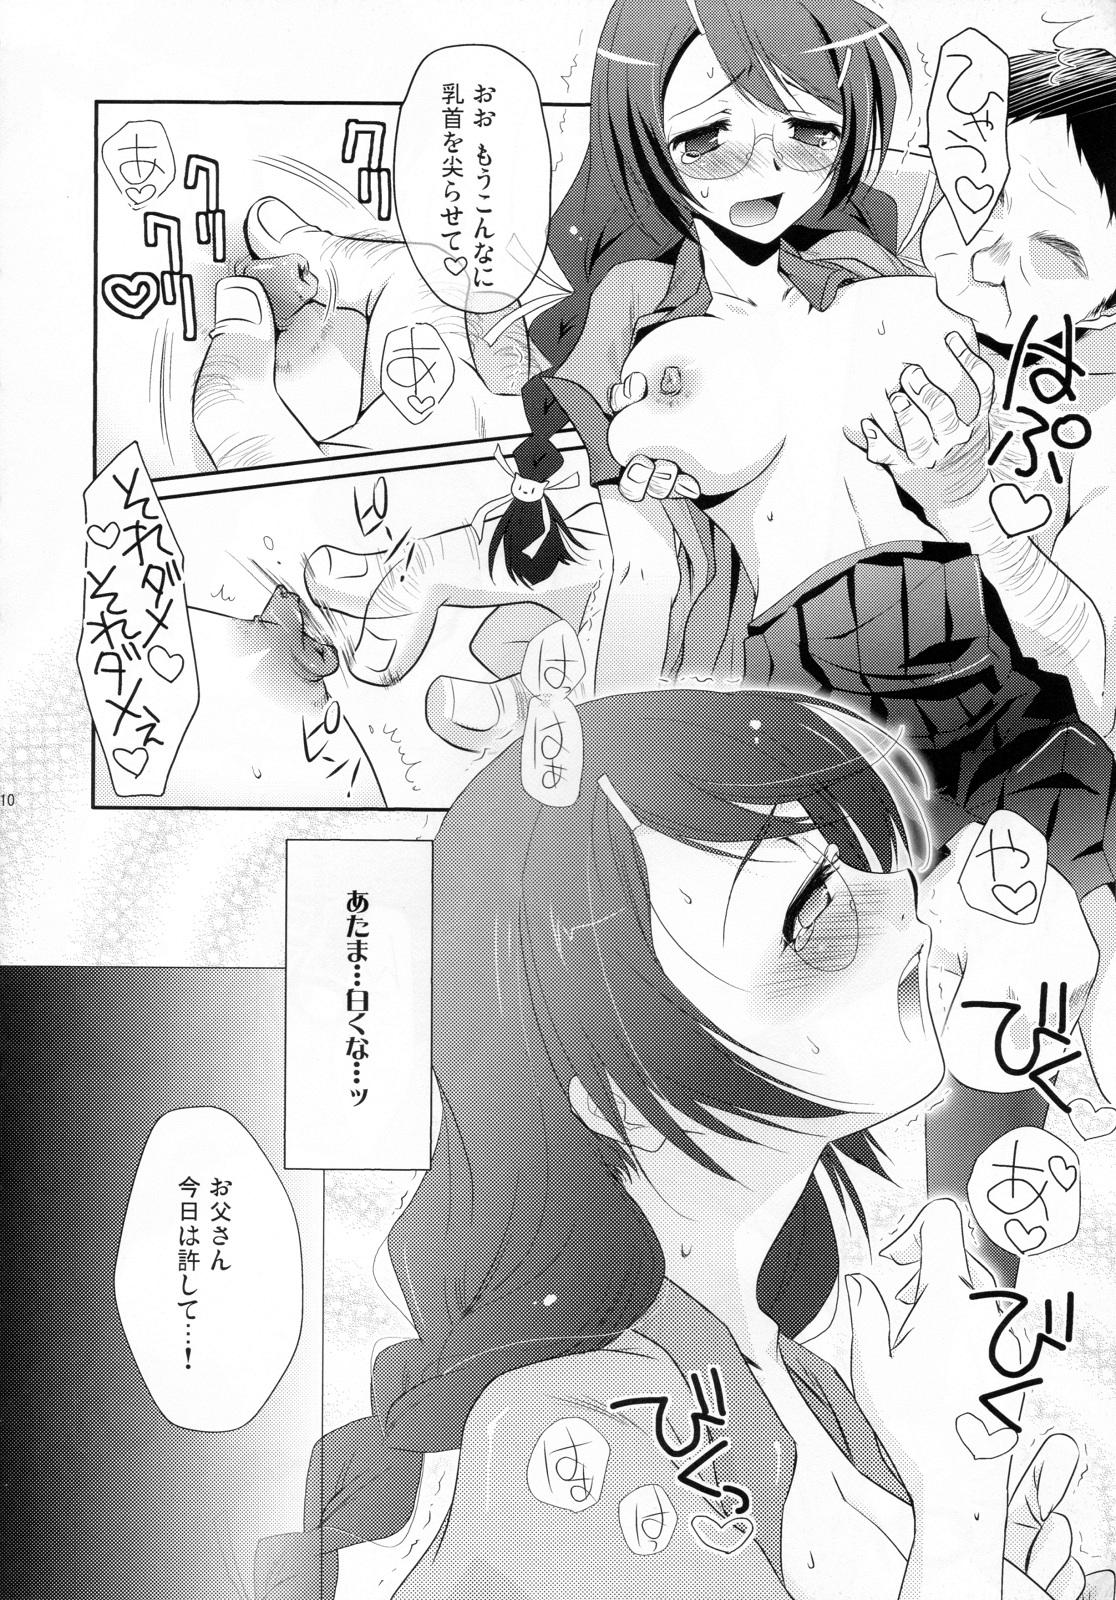 Twink Neko no inu ma ni Nezumi wa Odoru - Bakemonogatari Pauzudo - Page 10